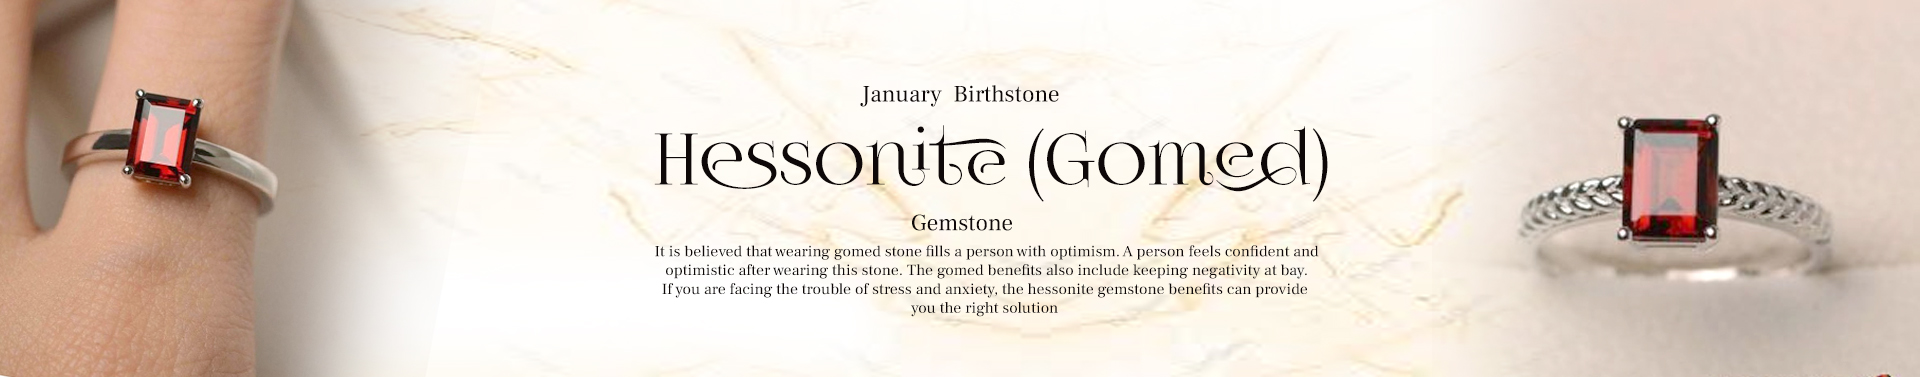 Hessonite (Gomed)